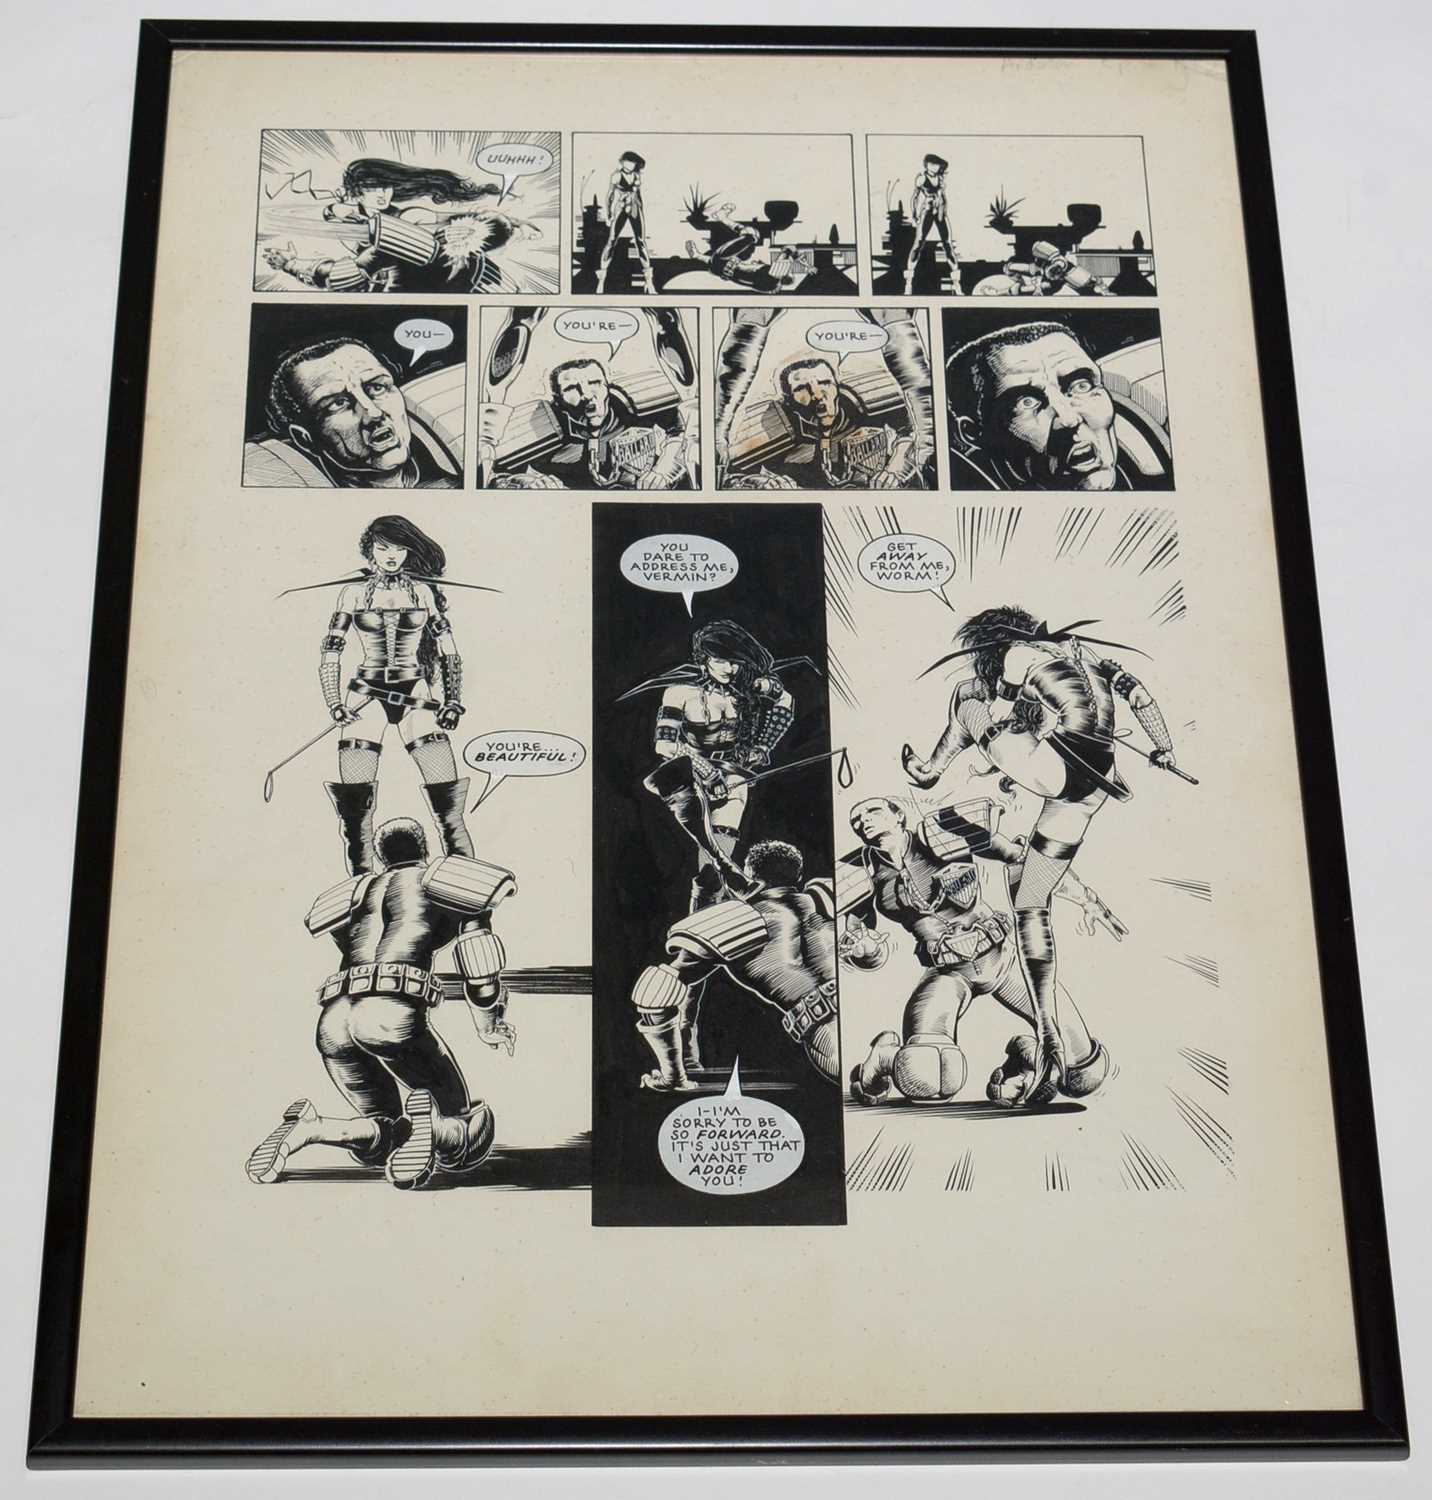 A page of original comic artwork